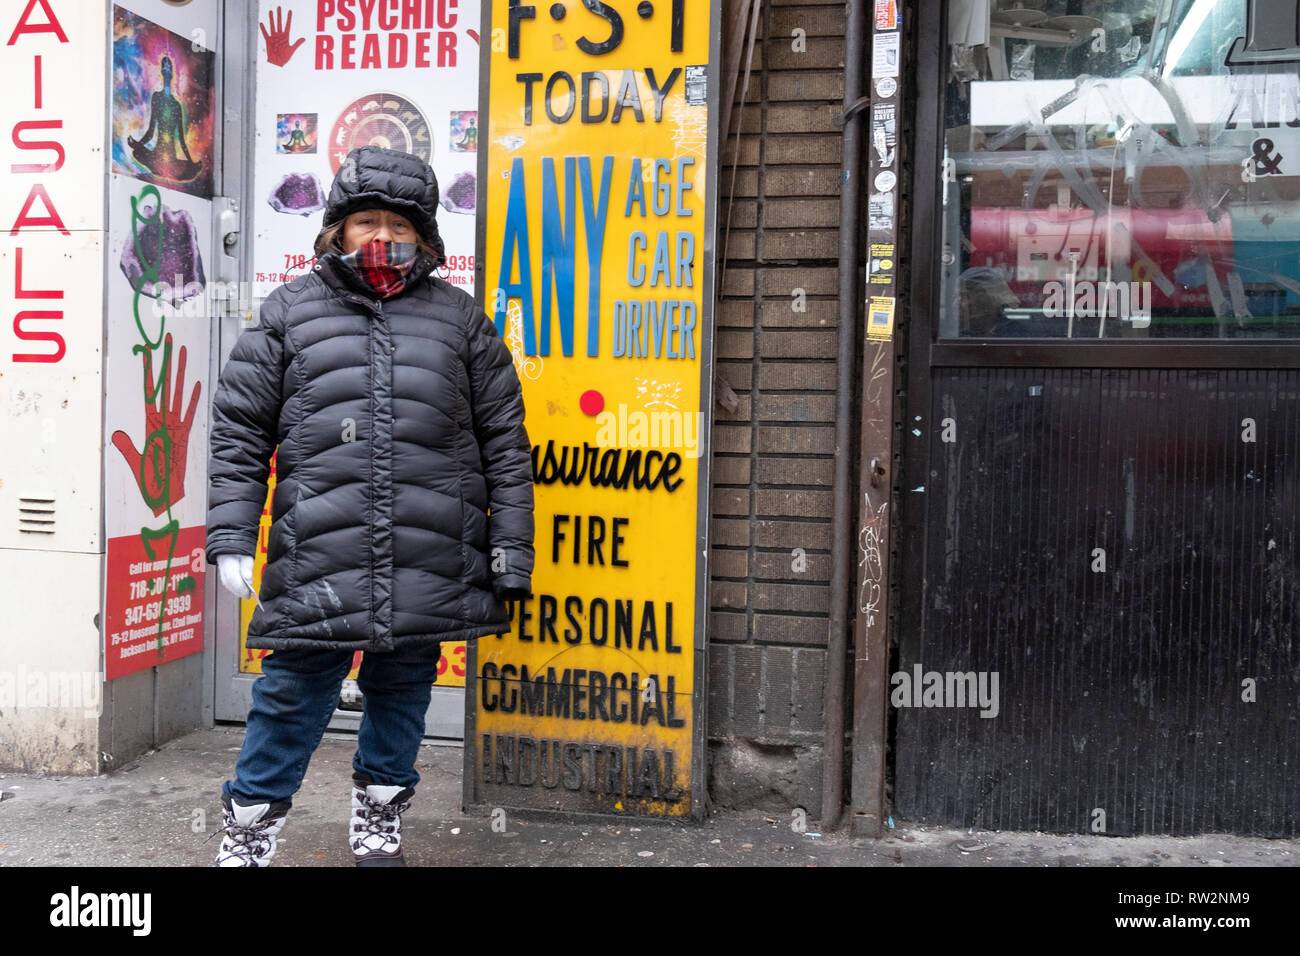 Una donna in una pesante soprabito mani volantini davanti ad un lettore psichica dell'ufficio in una fredda giornata invernale. A Roosevelt Ave. in Jackson Heights, New York. Foto Stock